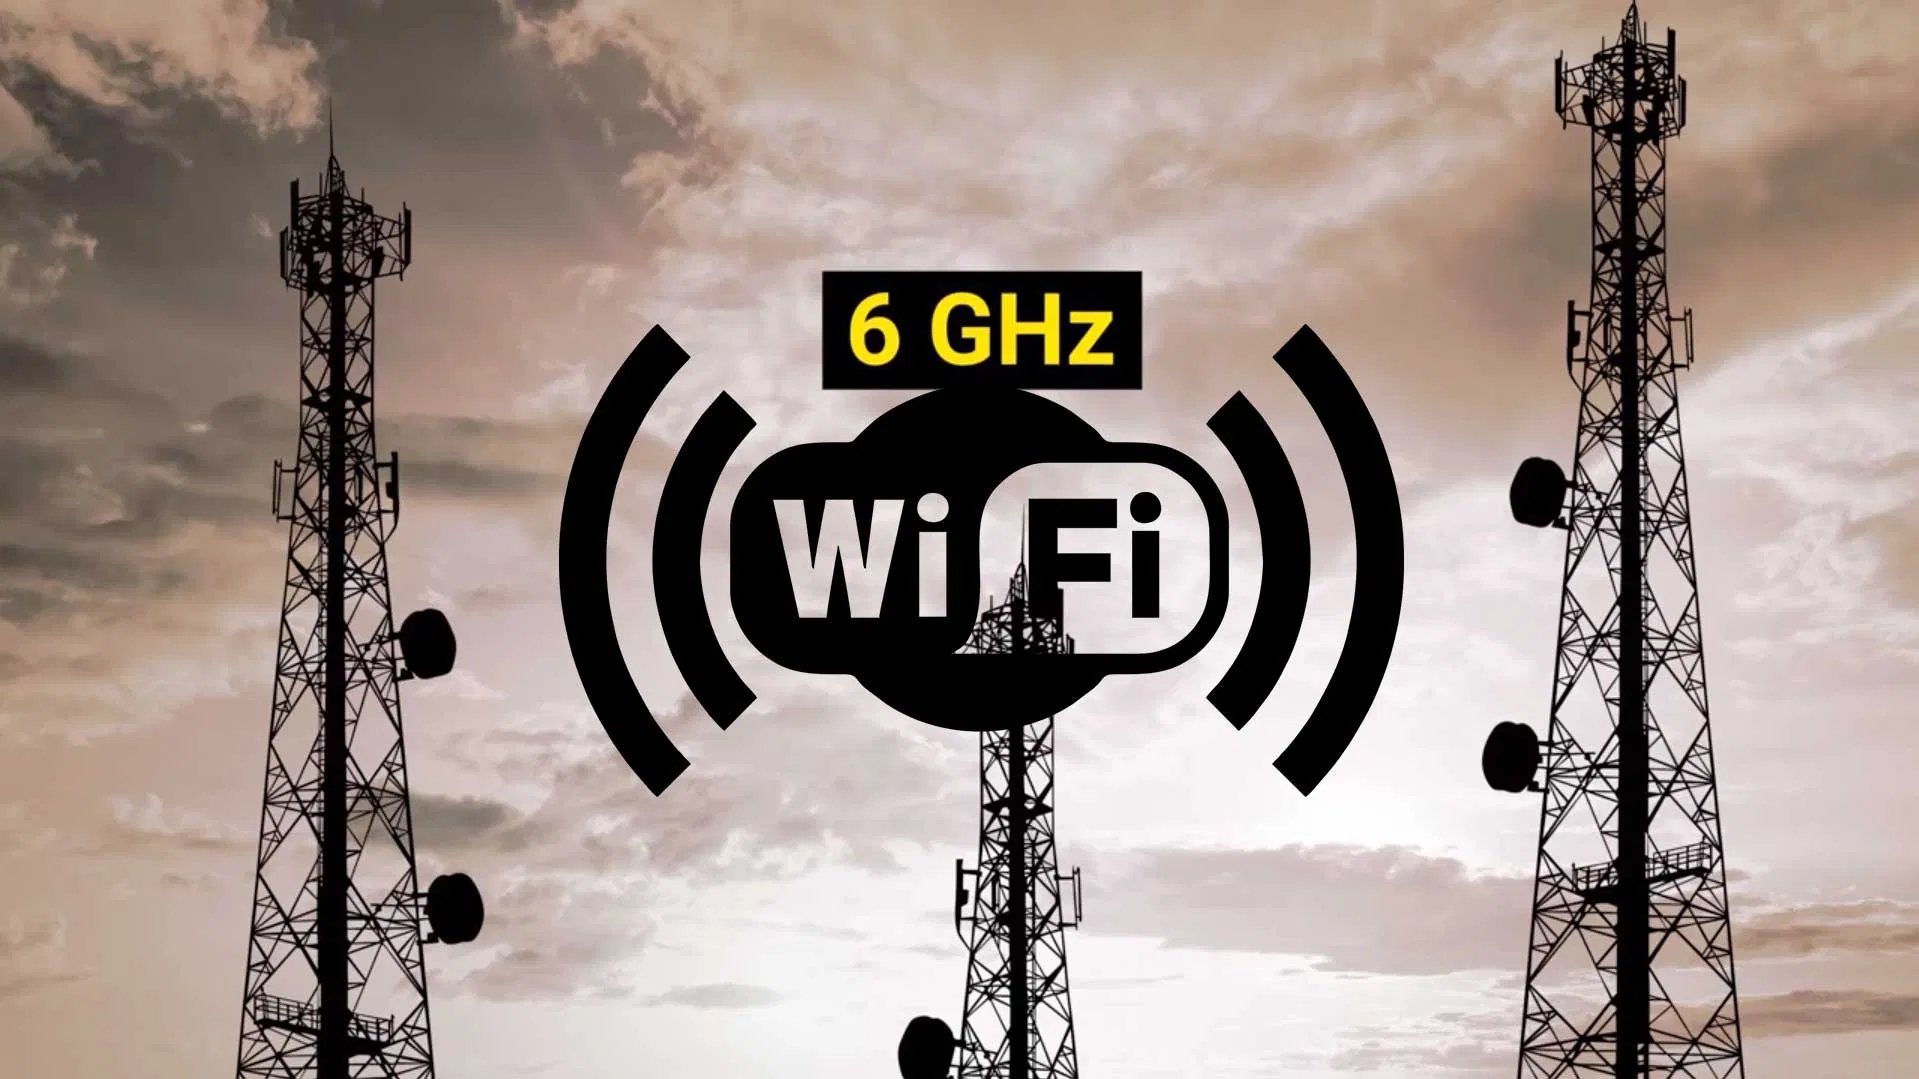 Wi-Fi 6GHz